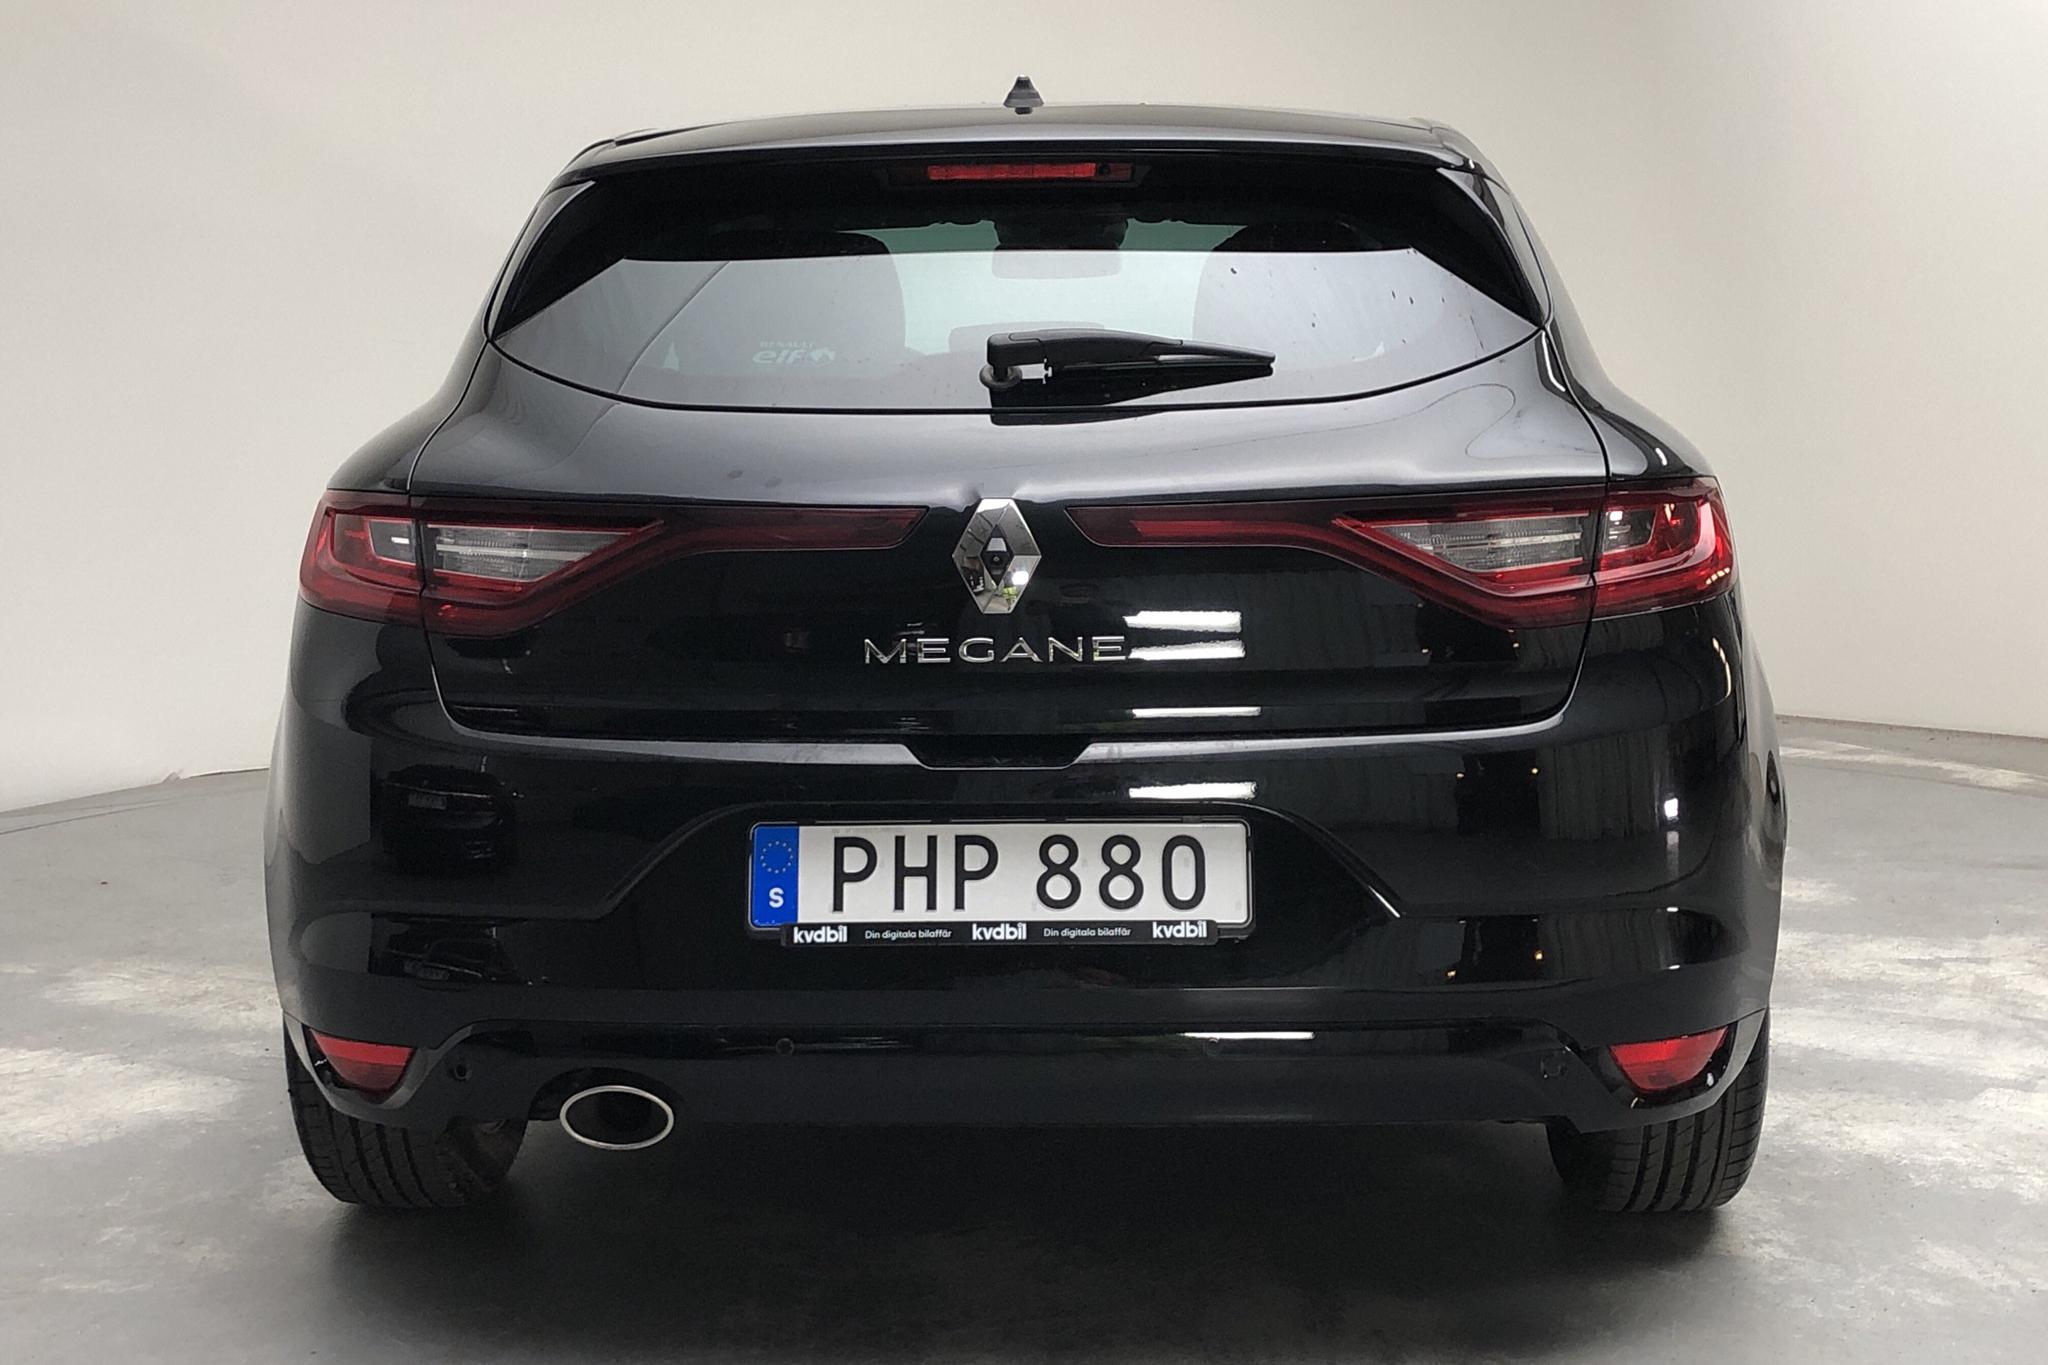 Renault Mégane 1.5 dCi 5dr (110hk) - 59 310 km - Automatic - black - 2017